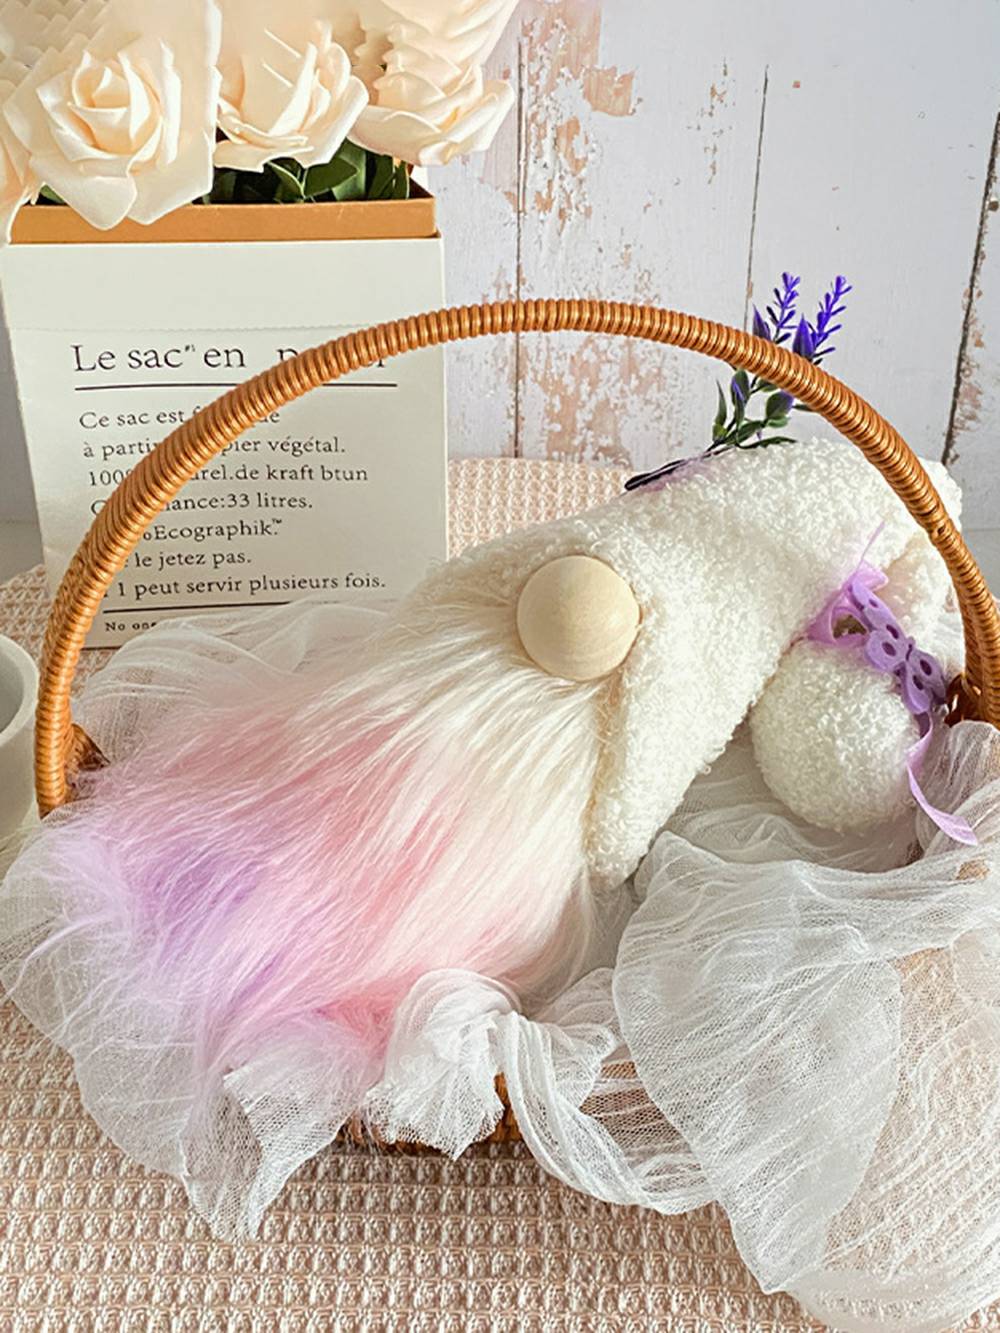 Jul Plysch Butterfly & Lavendel Rudolph Doll